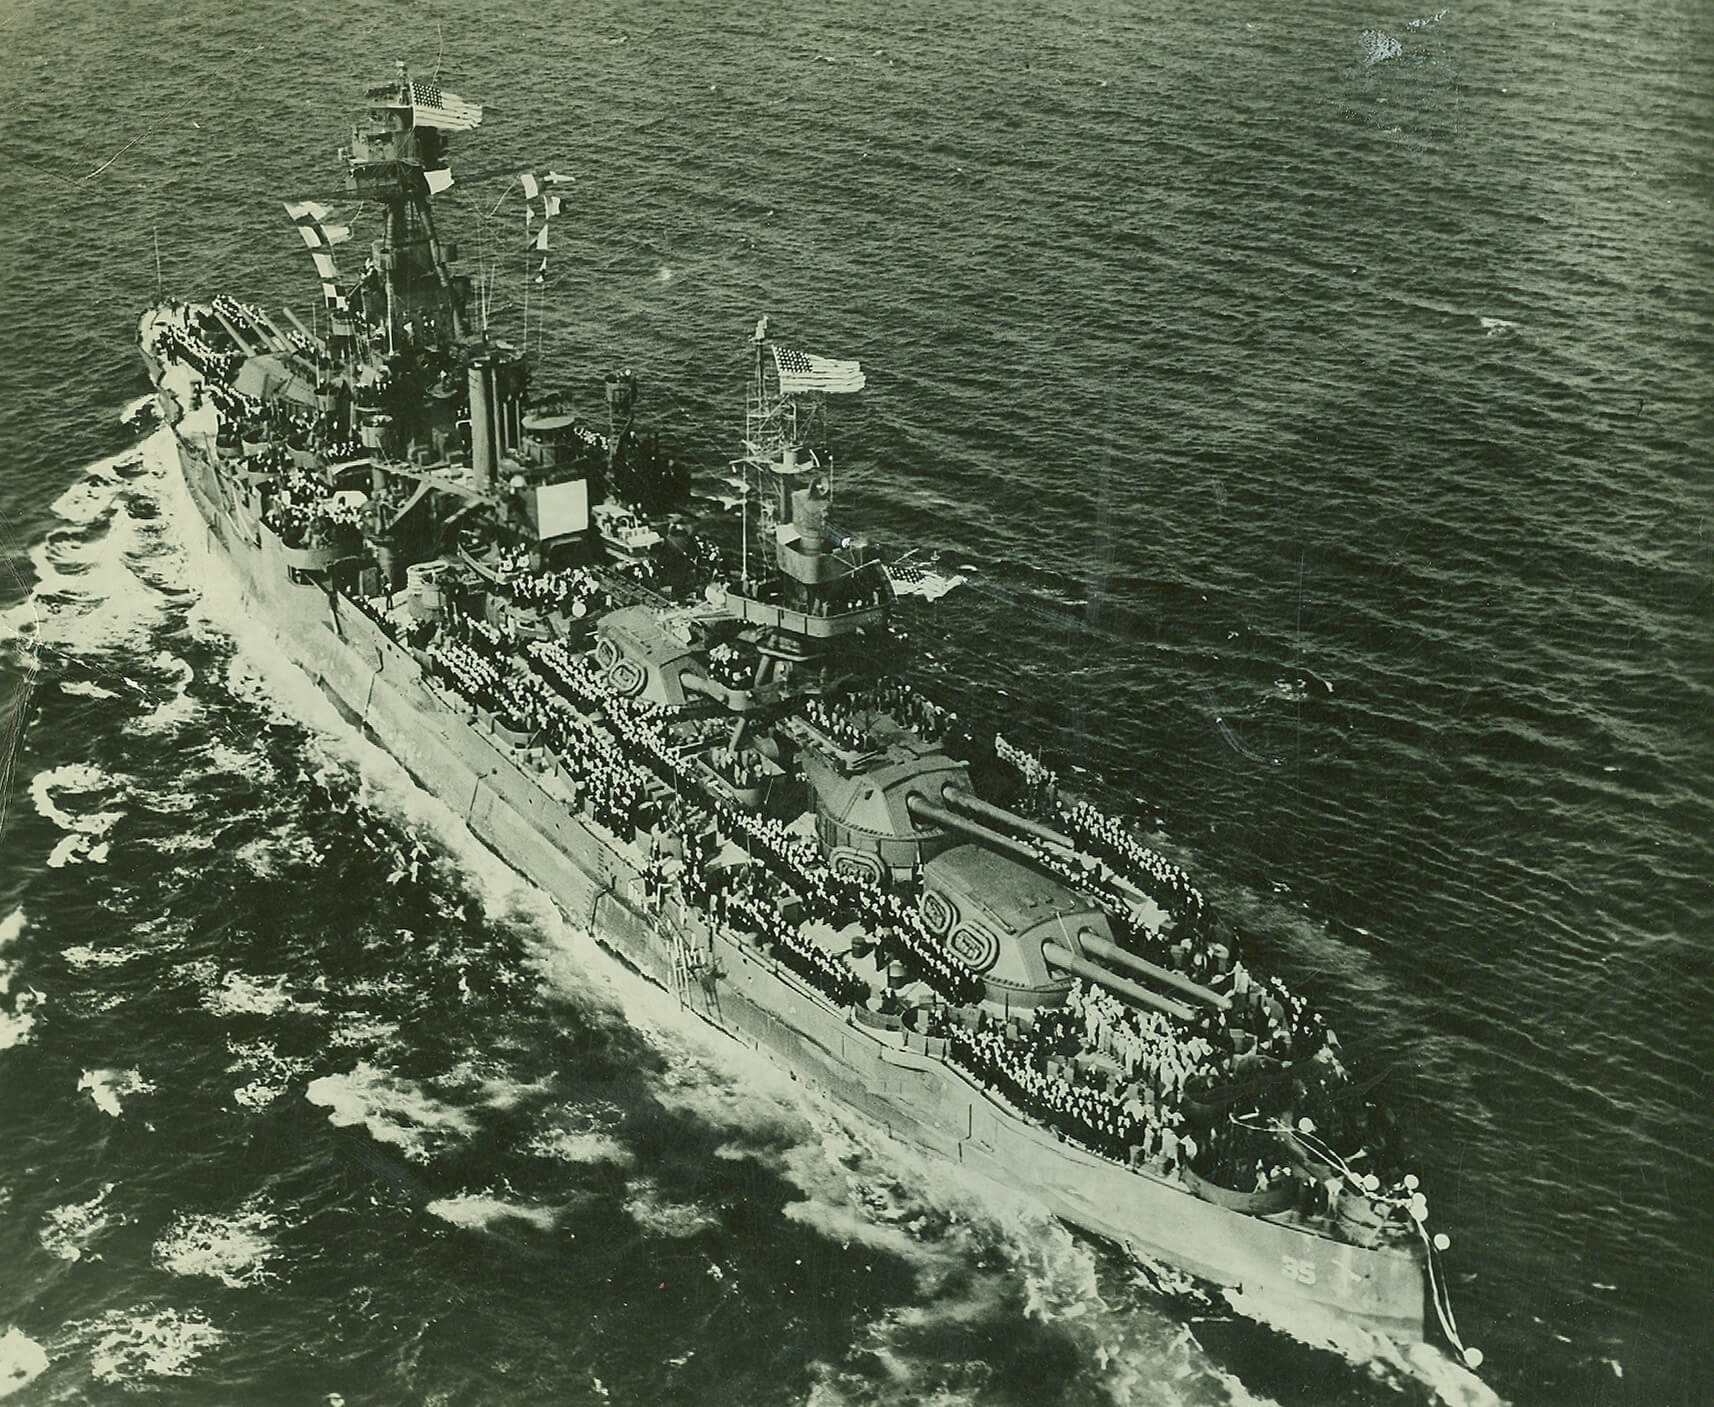 Battleship Texas on water